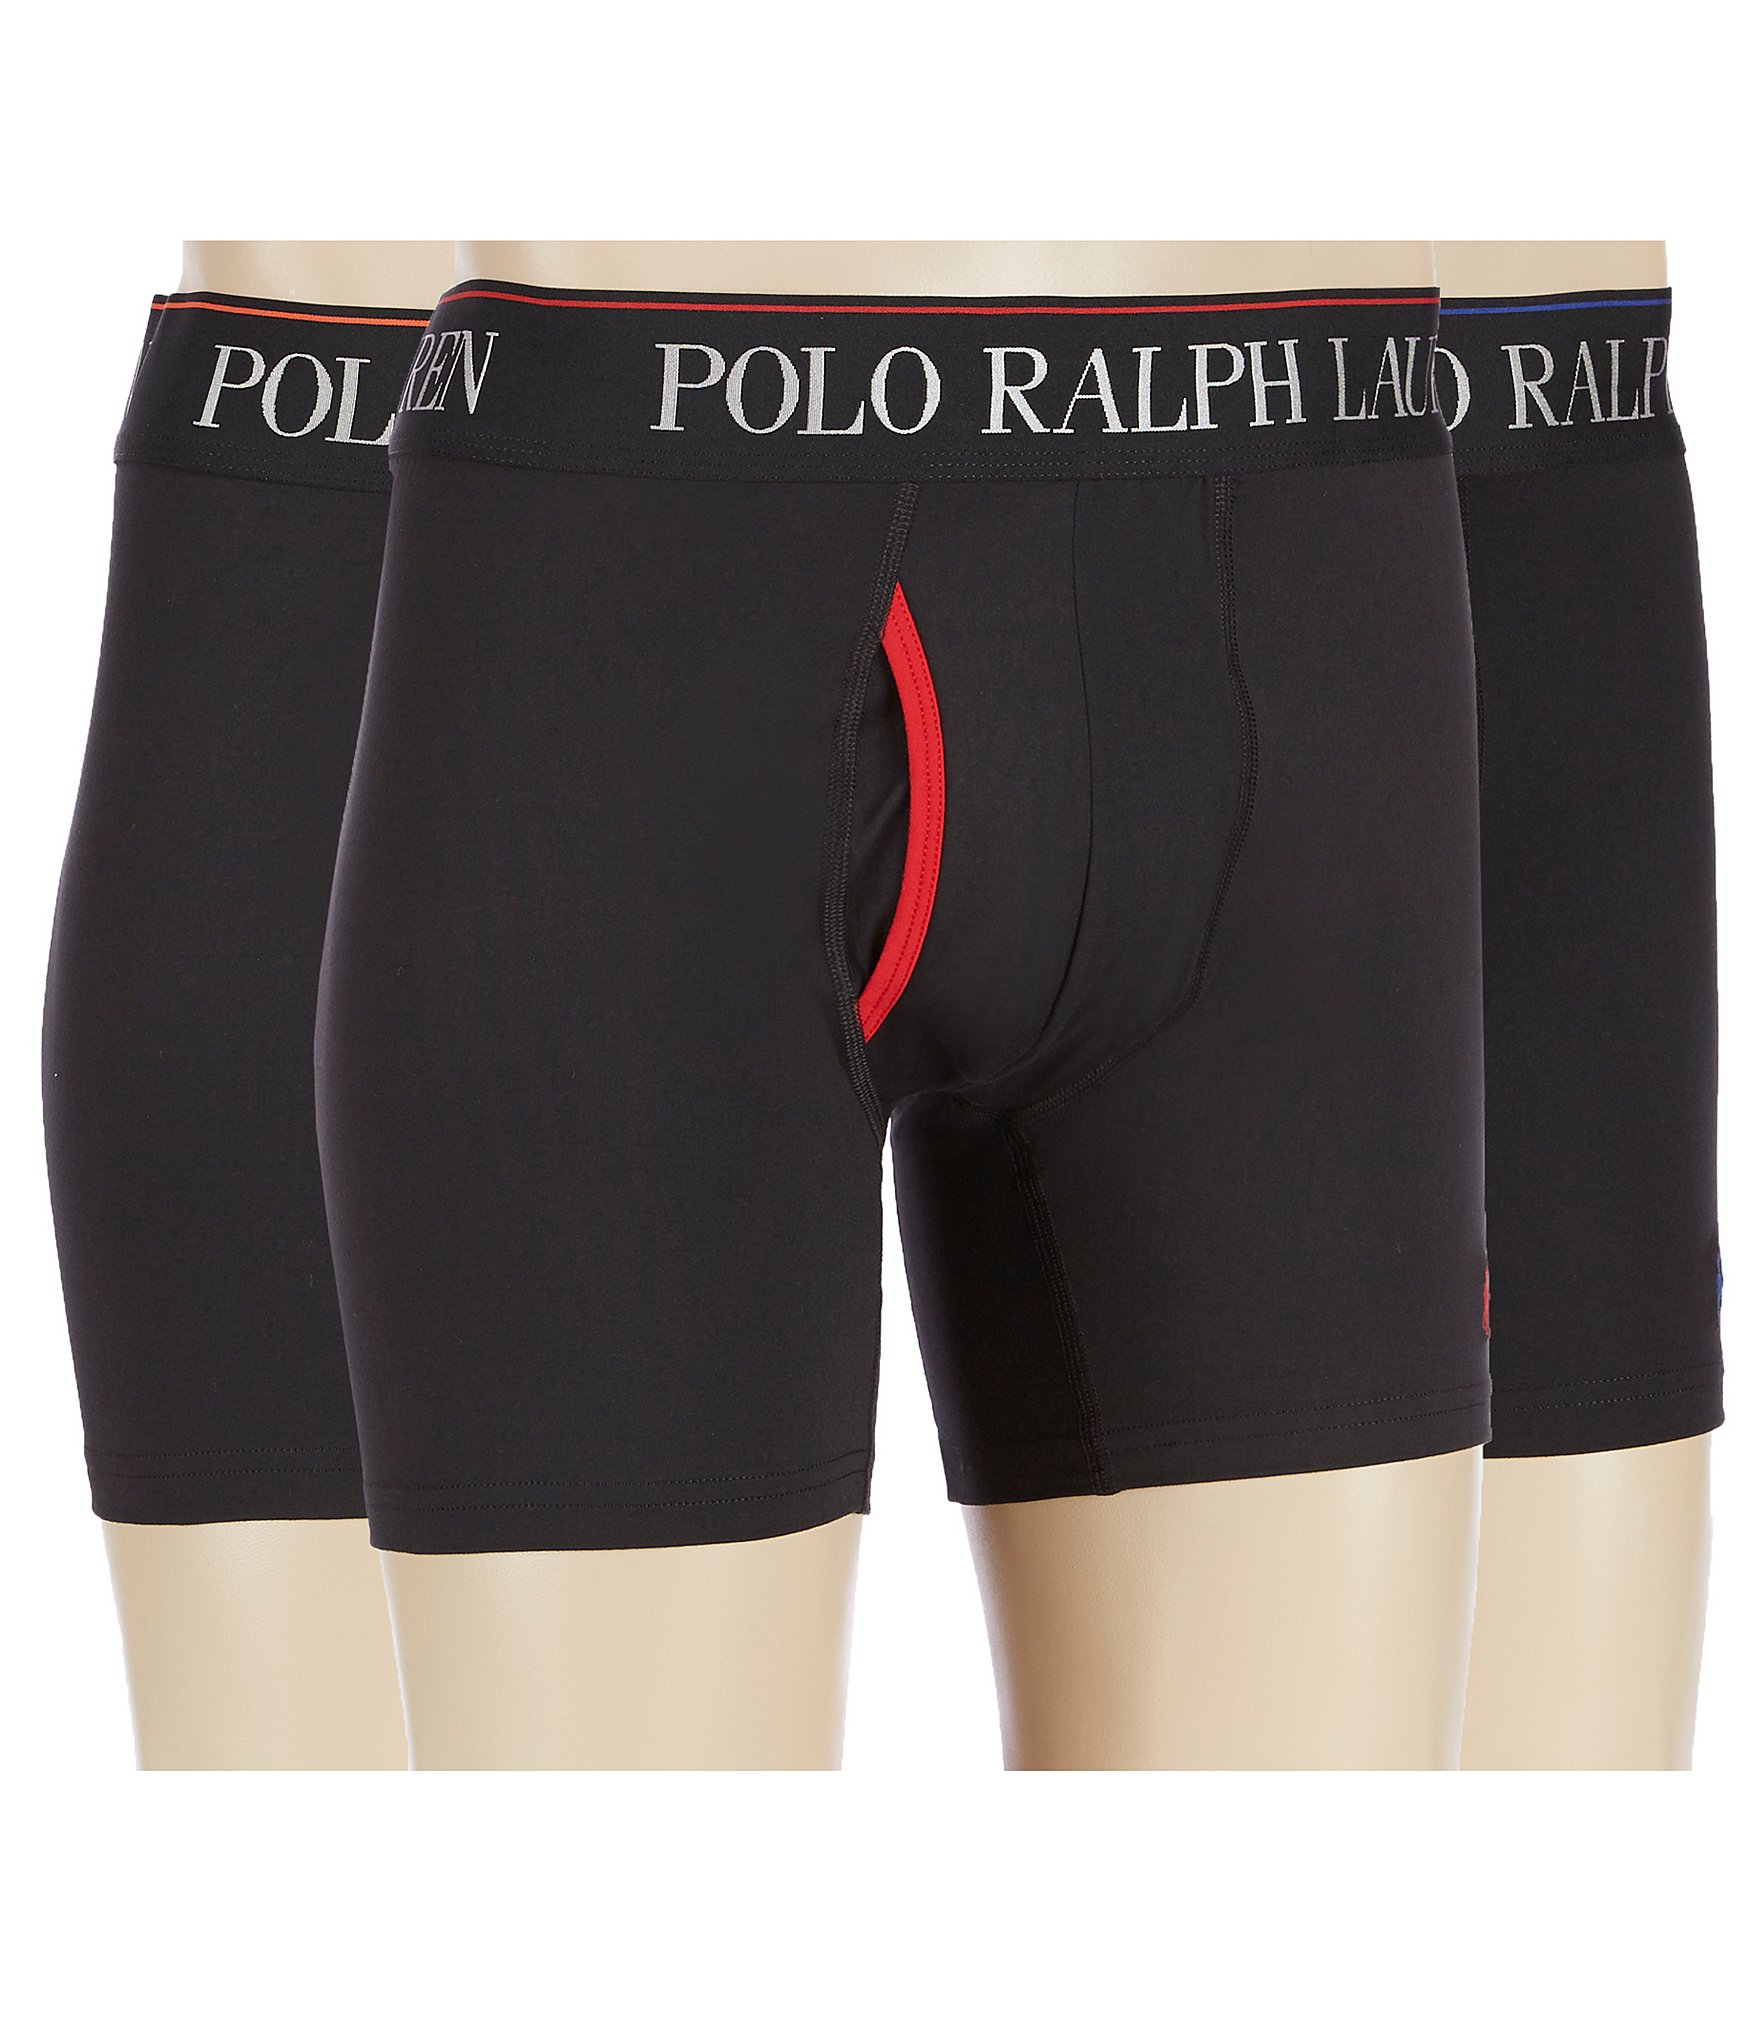 Polo Ralph Lauren Boxer Briefs 3 Pack Microfiber Boxers Men's Size ...